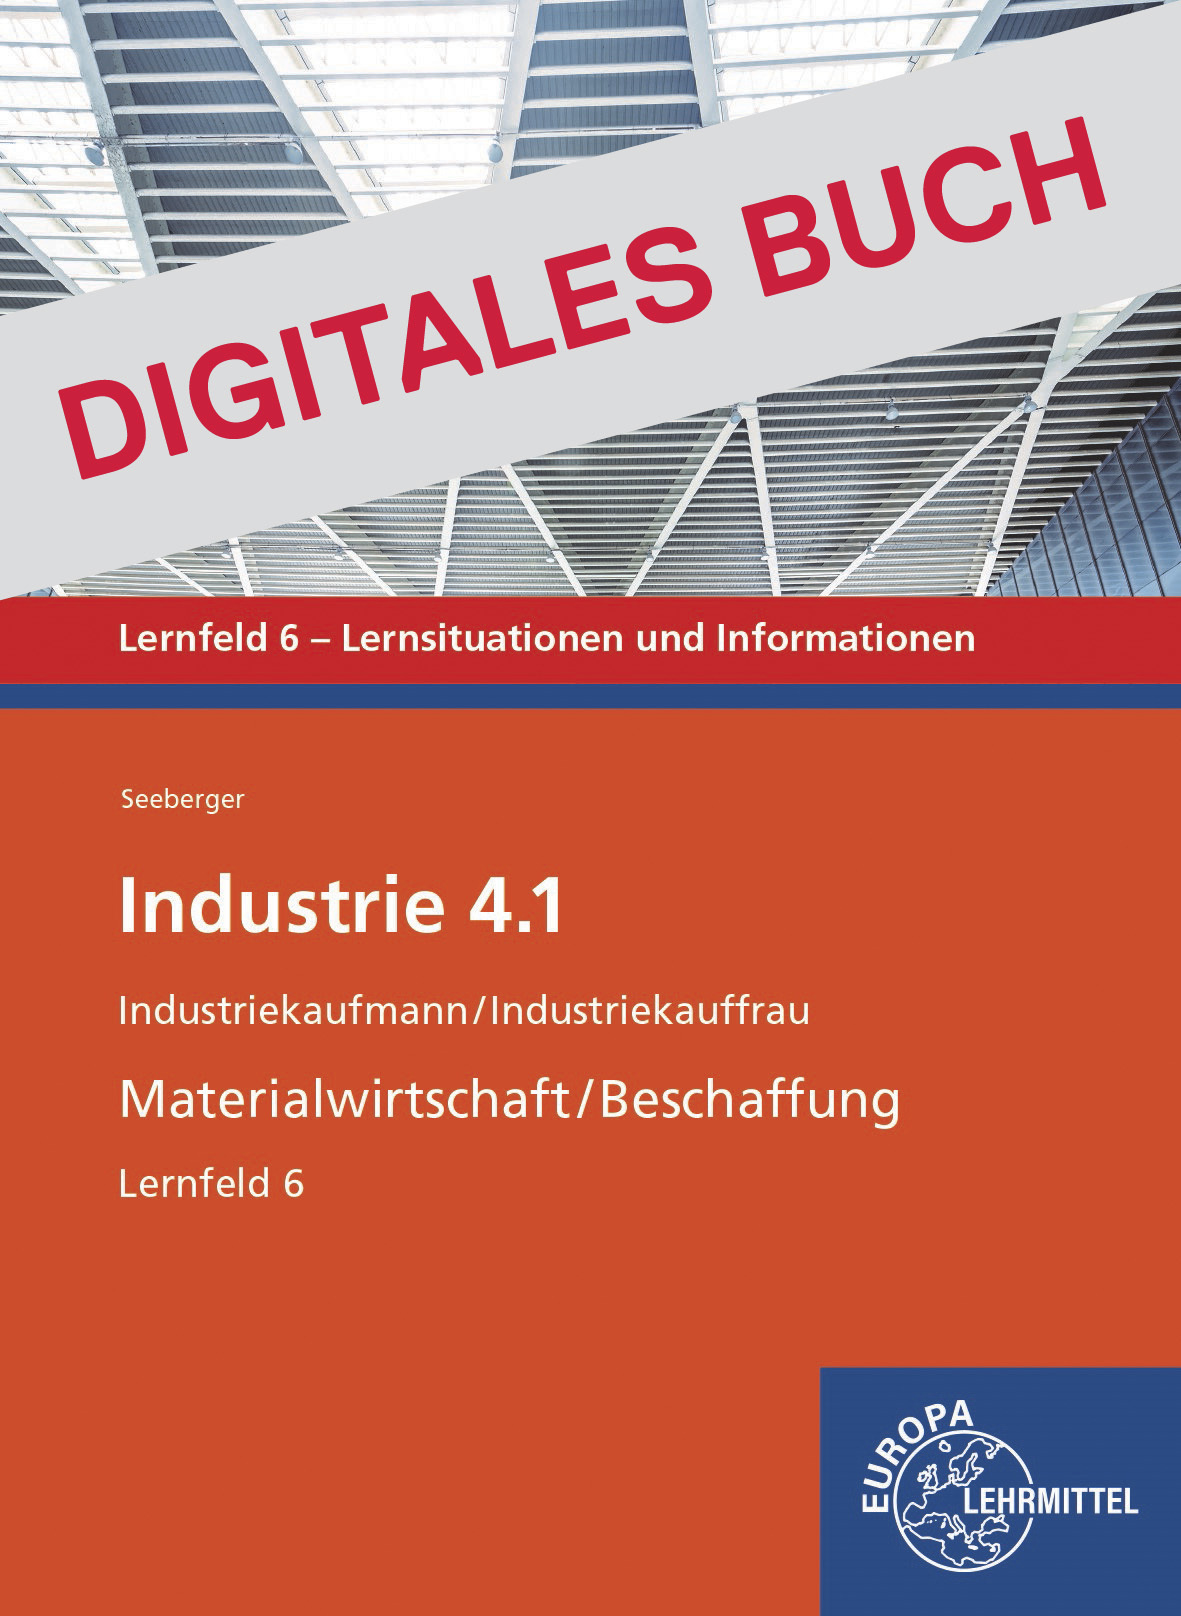 Industrie 4.1 - Materialwirtschaft/Beschaffung,  LF 6 - Digitales Buch